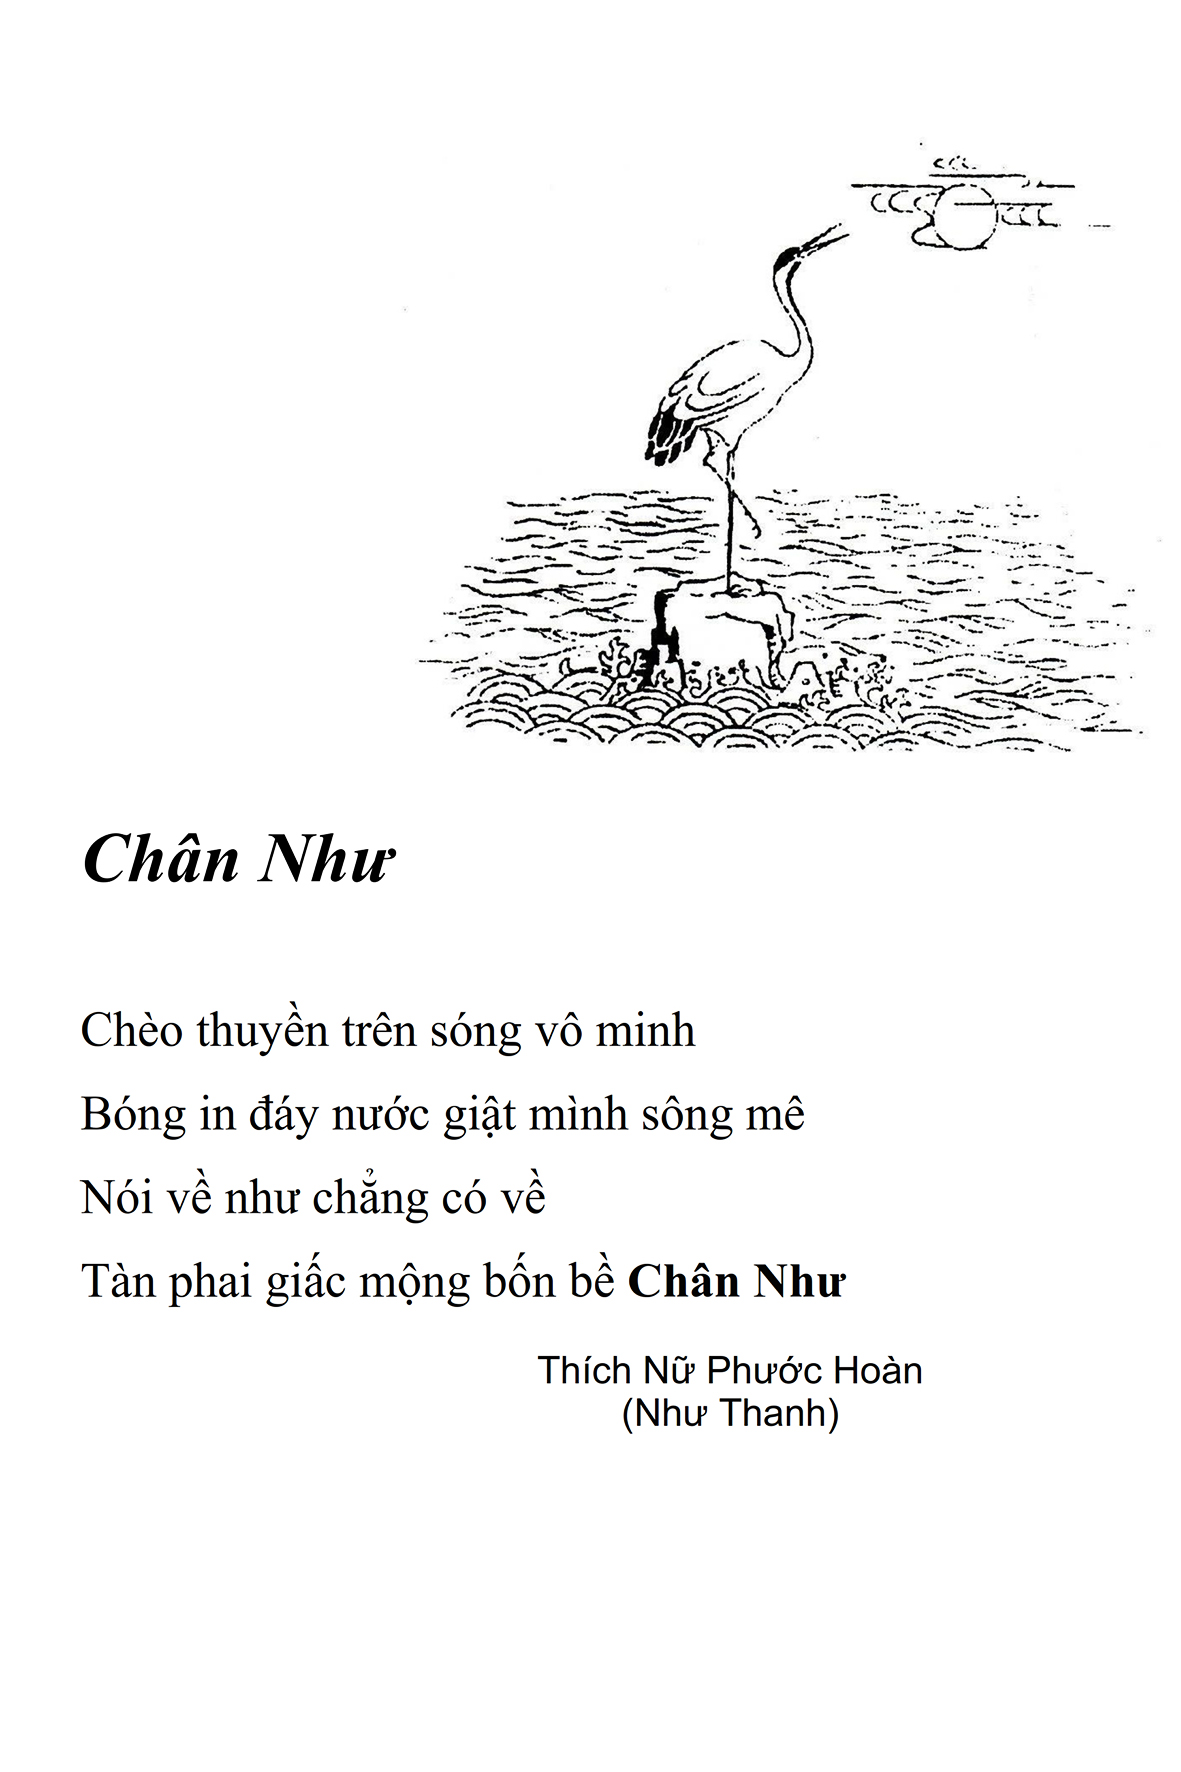 Chan Nhu